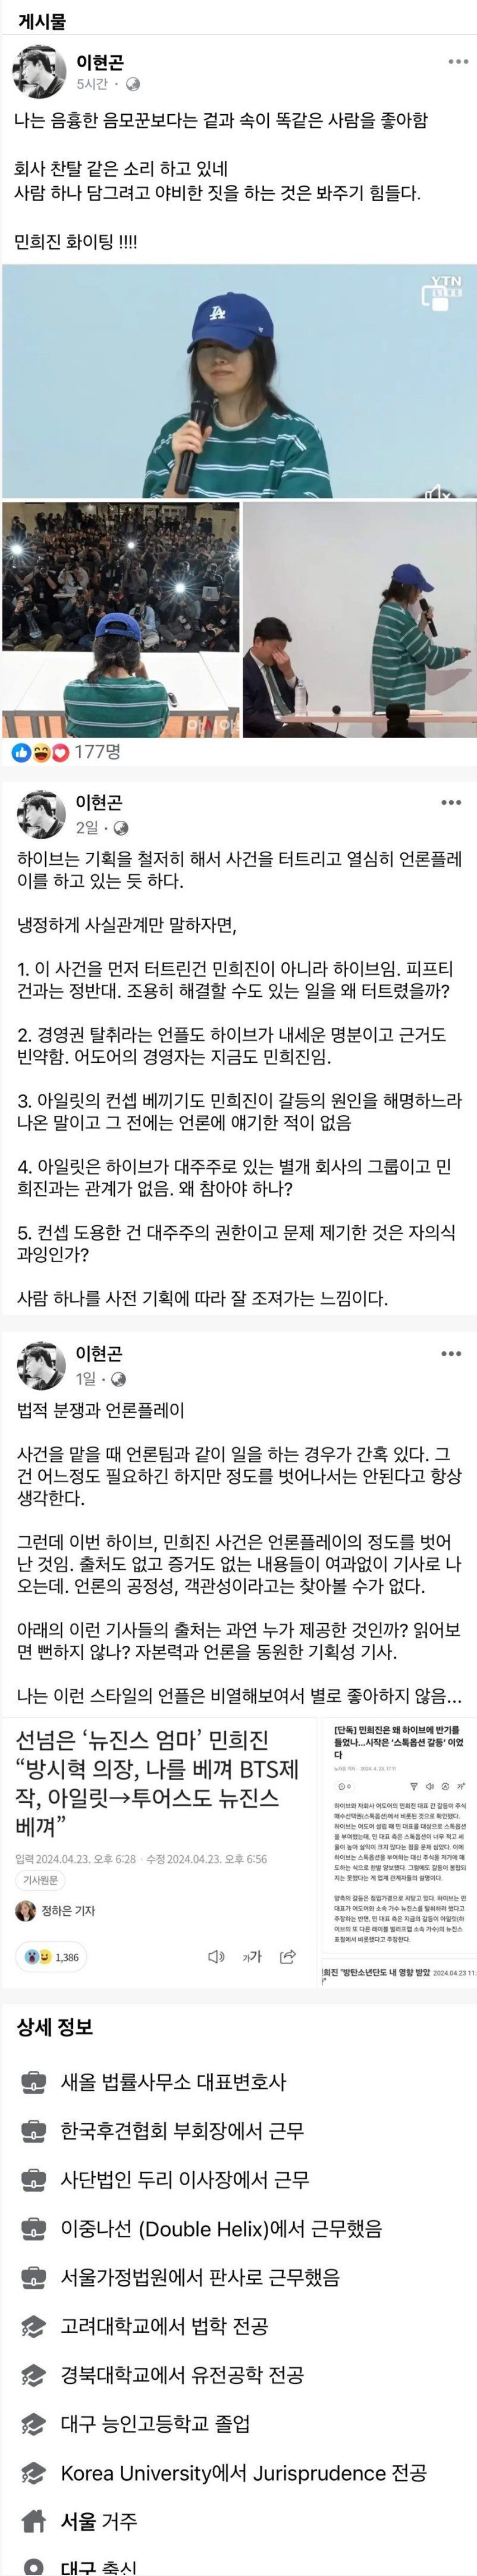 민희진 옹호하던 변호사 최근자 페북